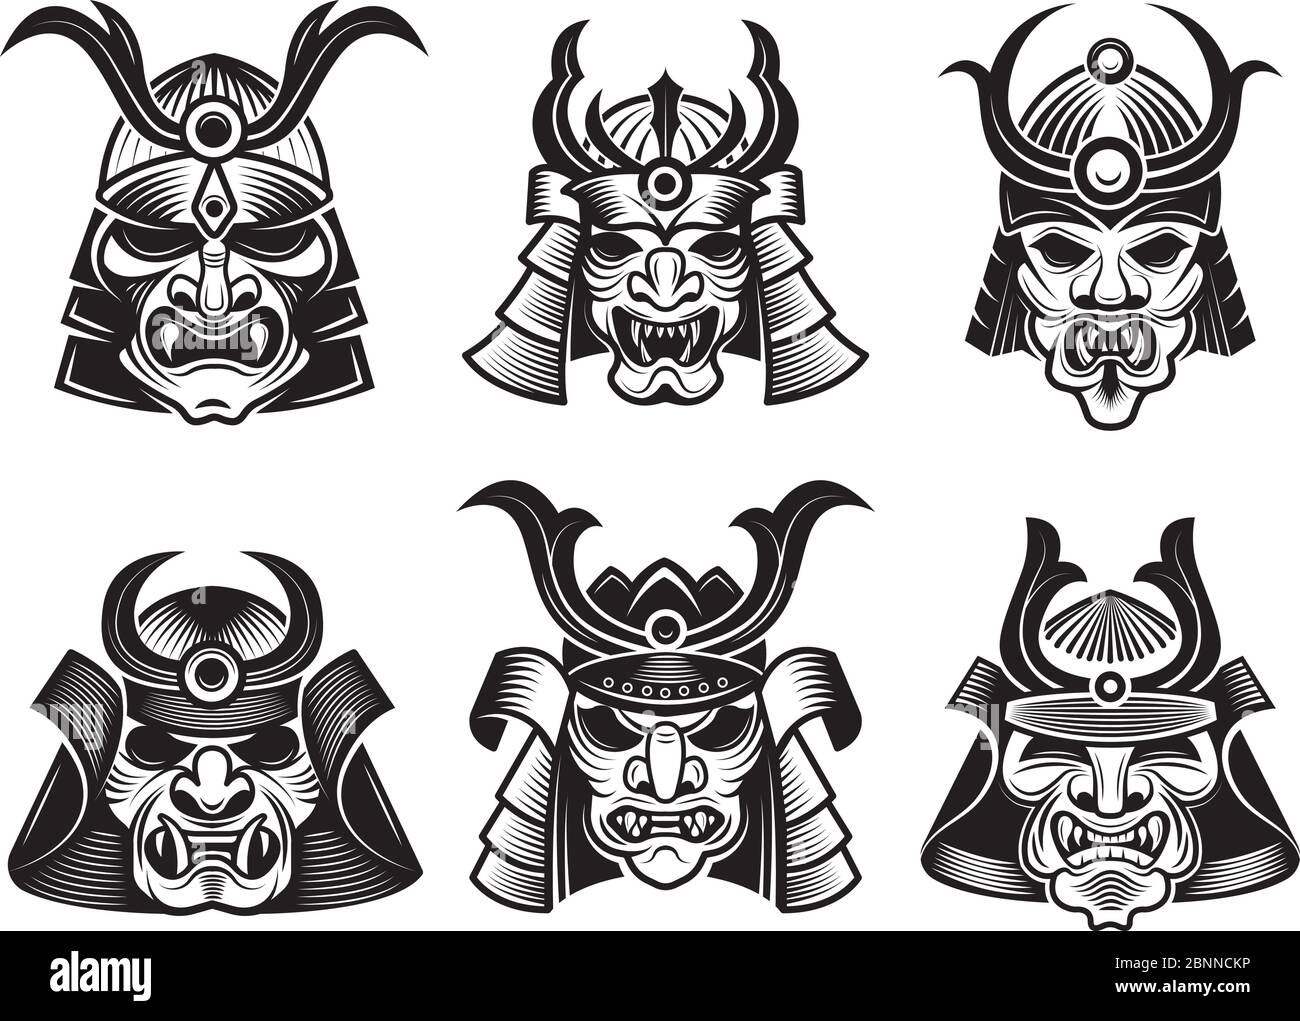 Masque martial asiatique. Illustrations vectorielles de guerrier samouraï  japonais pour tatoo ou logos Image Vectorielle Stock - Alamy